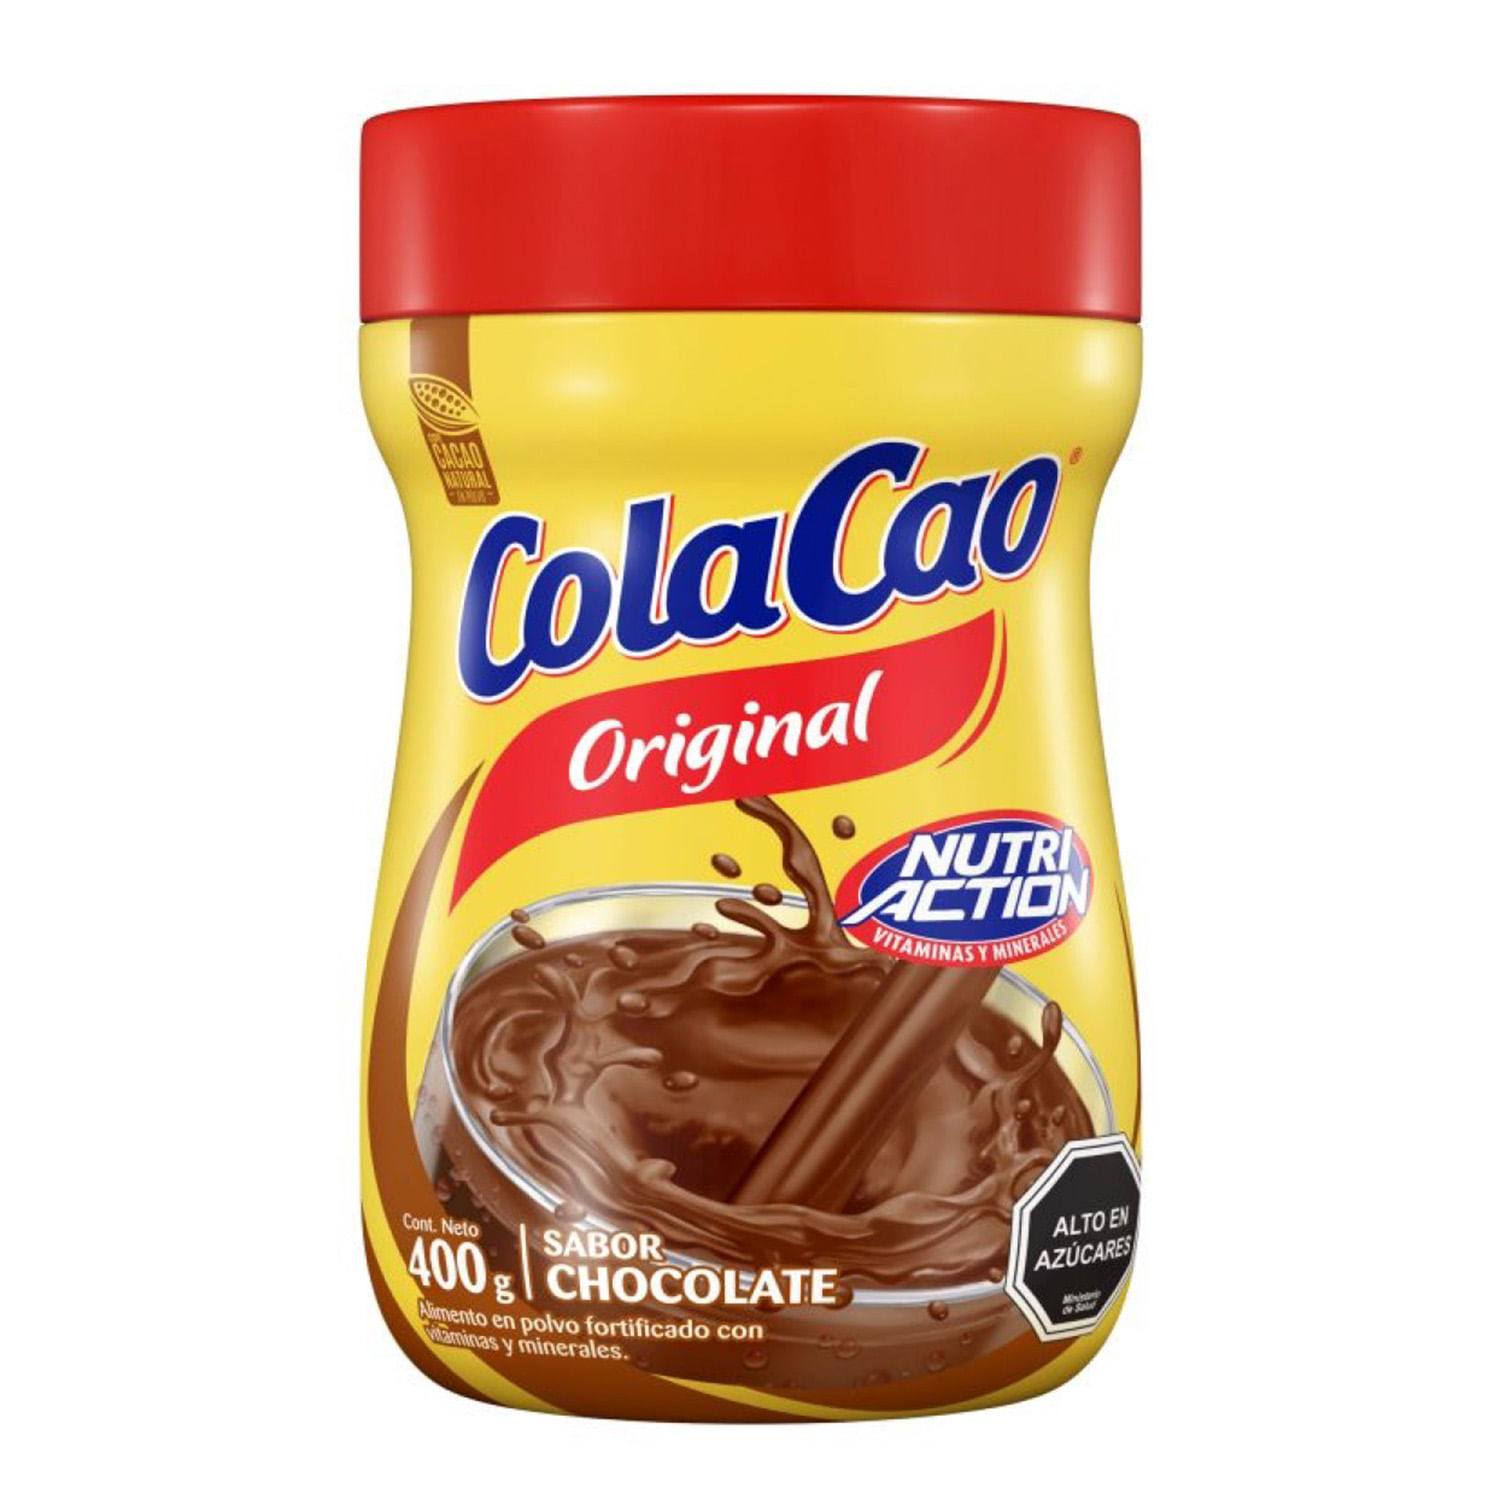 ColaCao